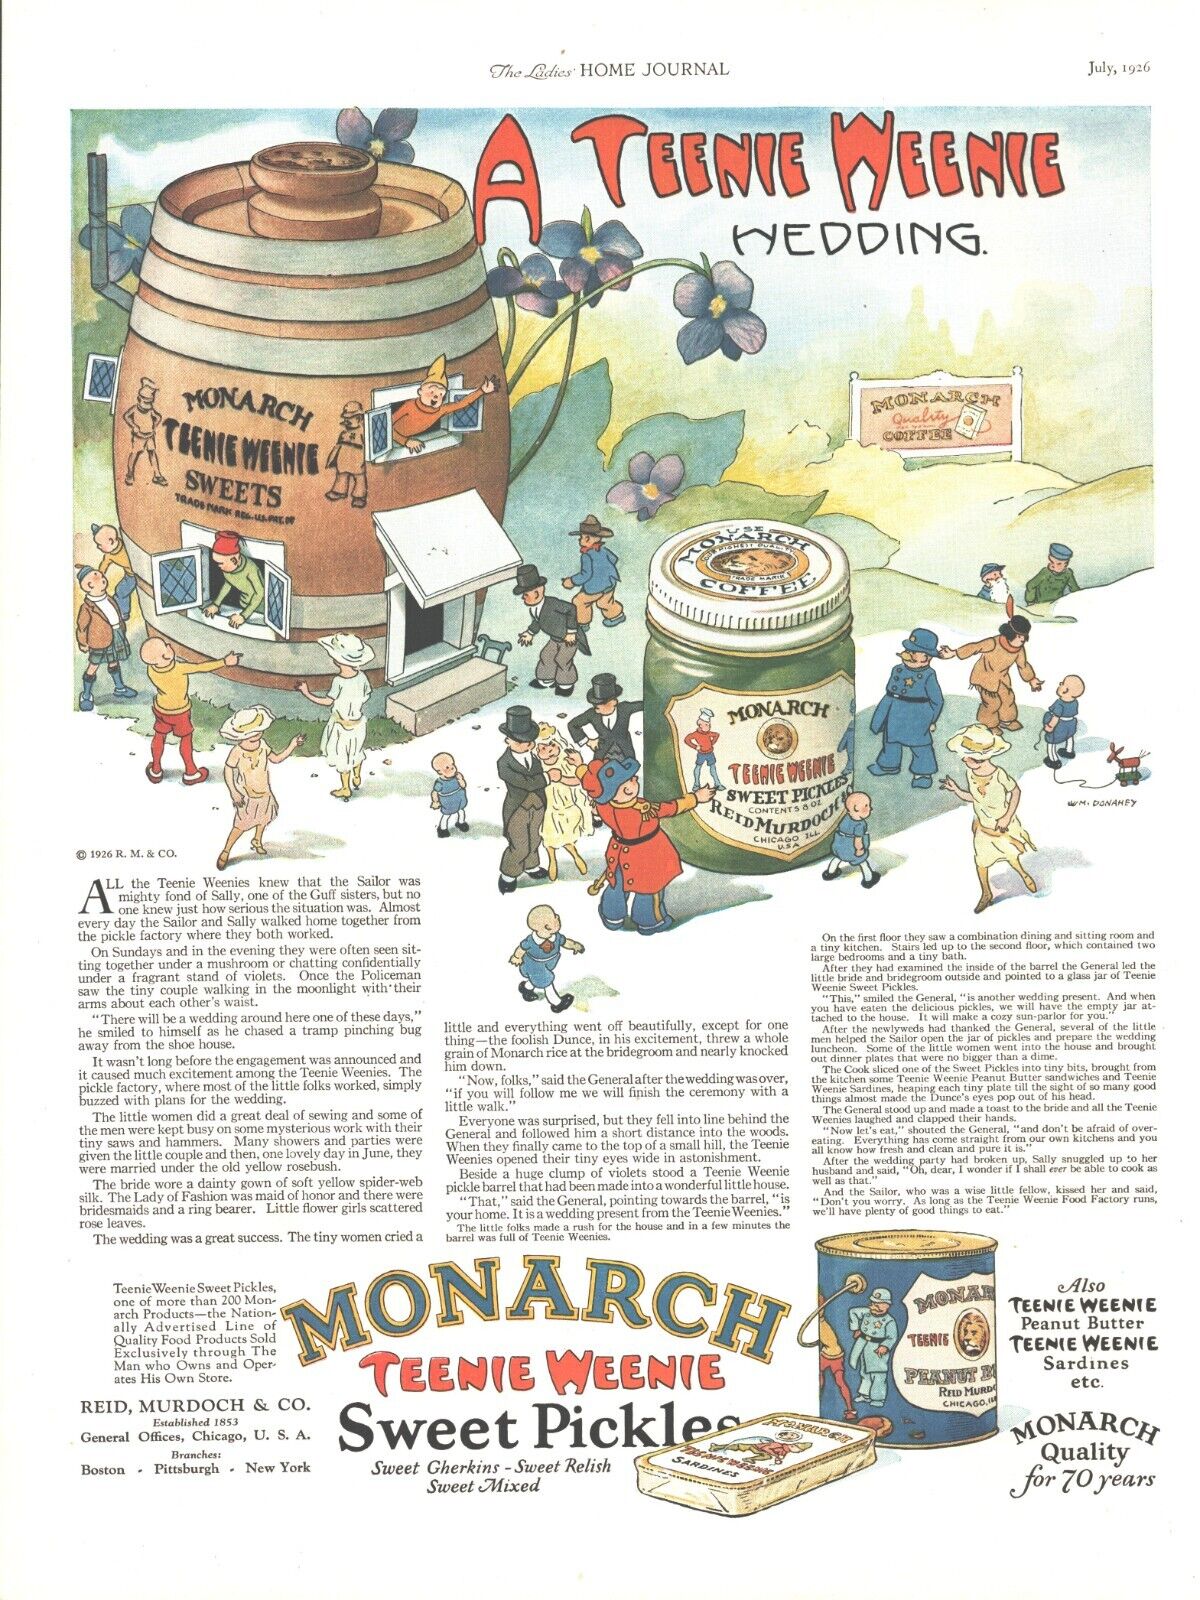 1926 Monarch Pickles Vintage Print Ad Teenie Weenie Comic Wedding Gherkins